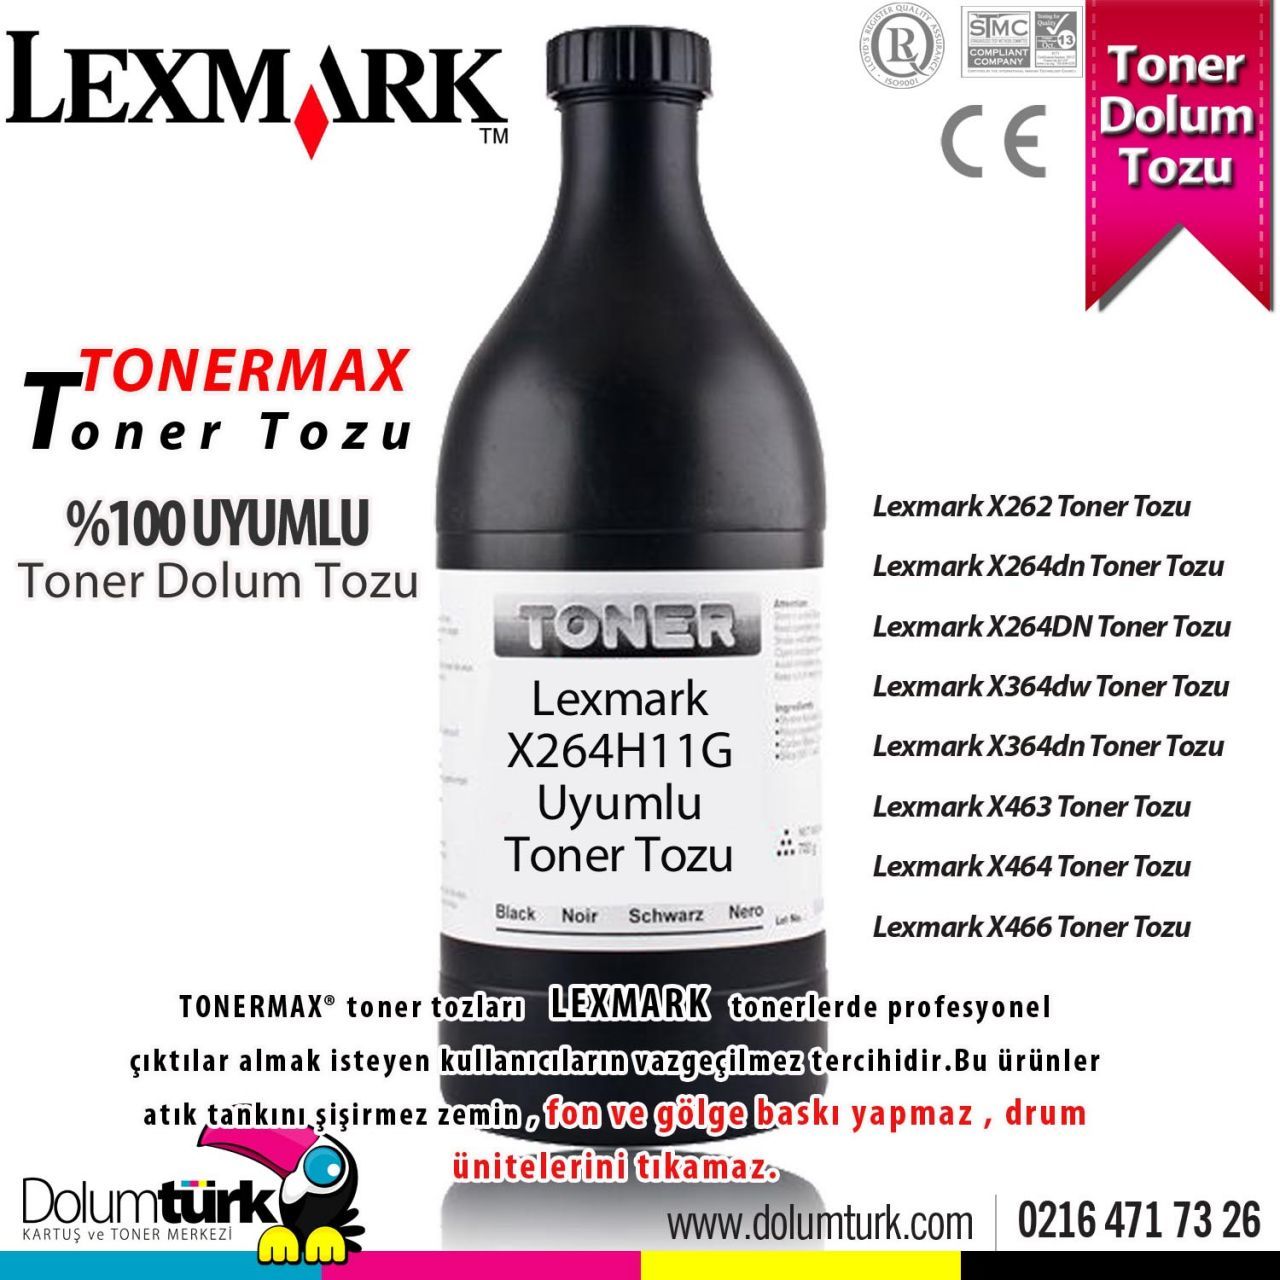 Lexmark X264H11G / X262 / X264dn / X264DN / X364dw / X364dn Toner Tozu